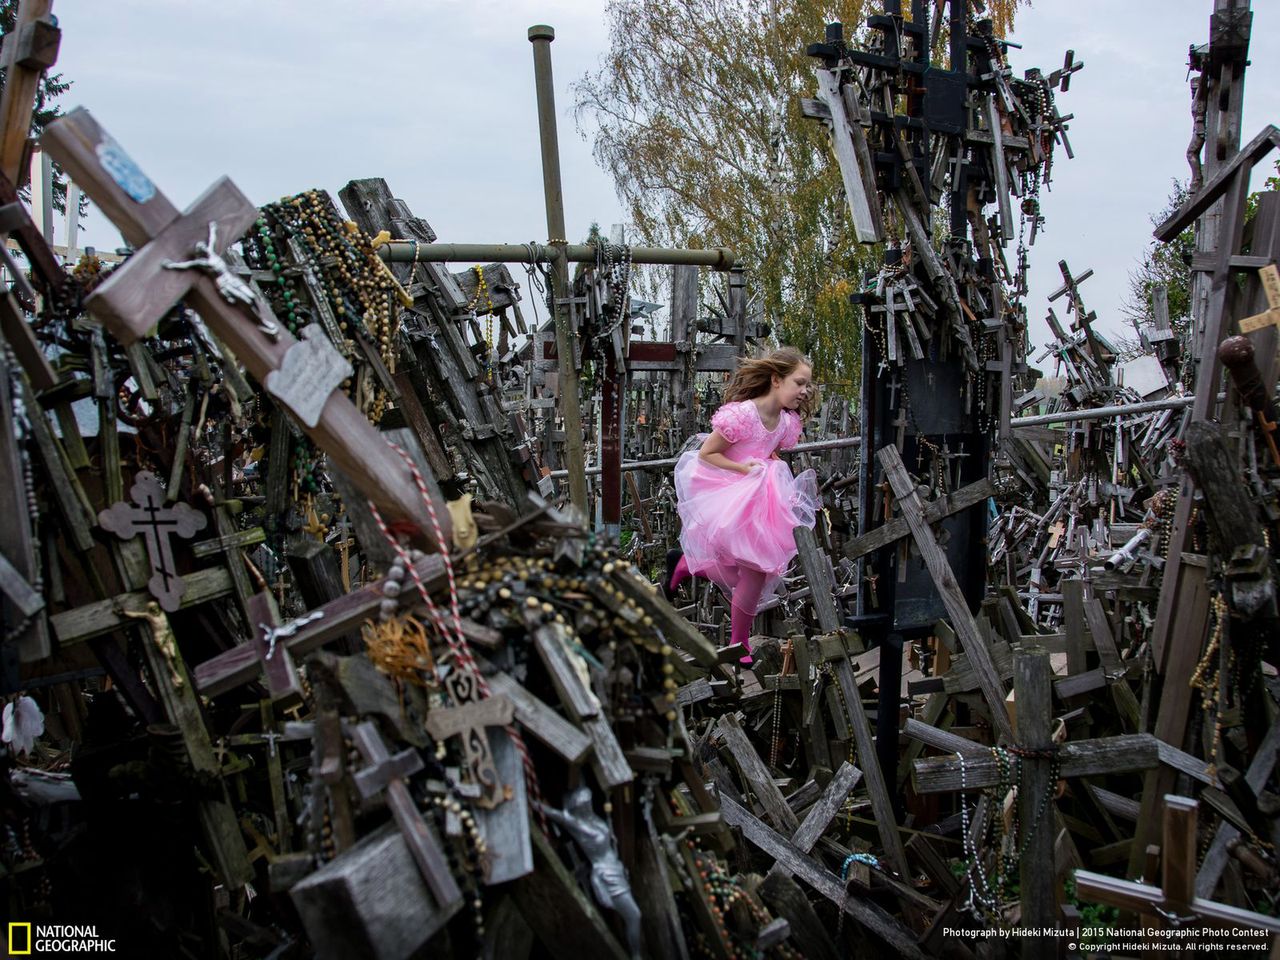 Pierwsze z honorowo wyróżnionych zdjęć autorstwa Hideki Mizuta przedstawia dziewczynkę w stroju wróżki biegającą wśród lasu krzyży. „Hill of Crosses” to fotografia opowiadająca o katolickim oporze względem prześladowań na Litwie.